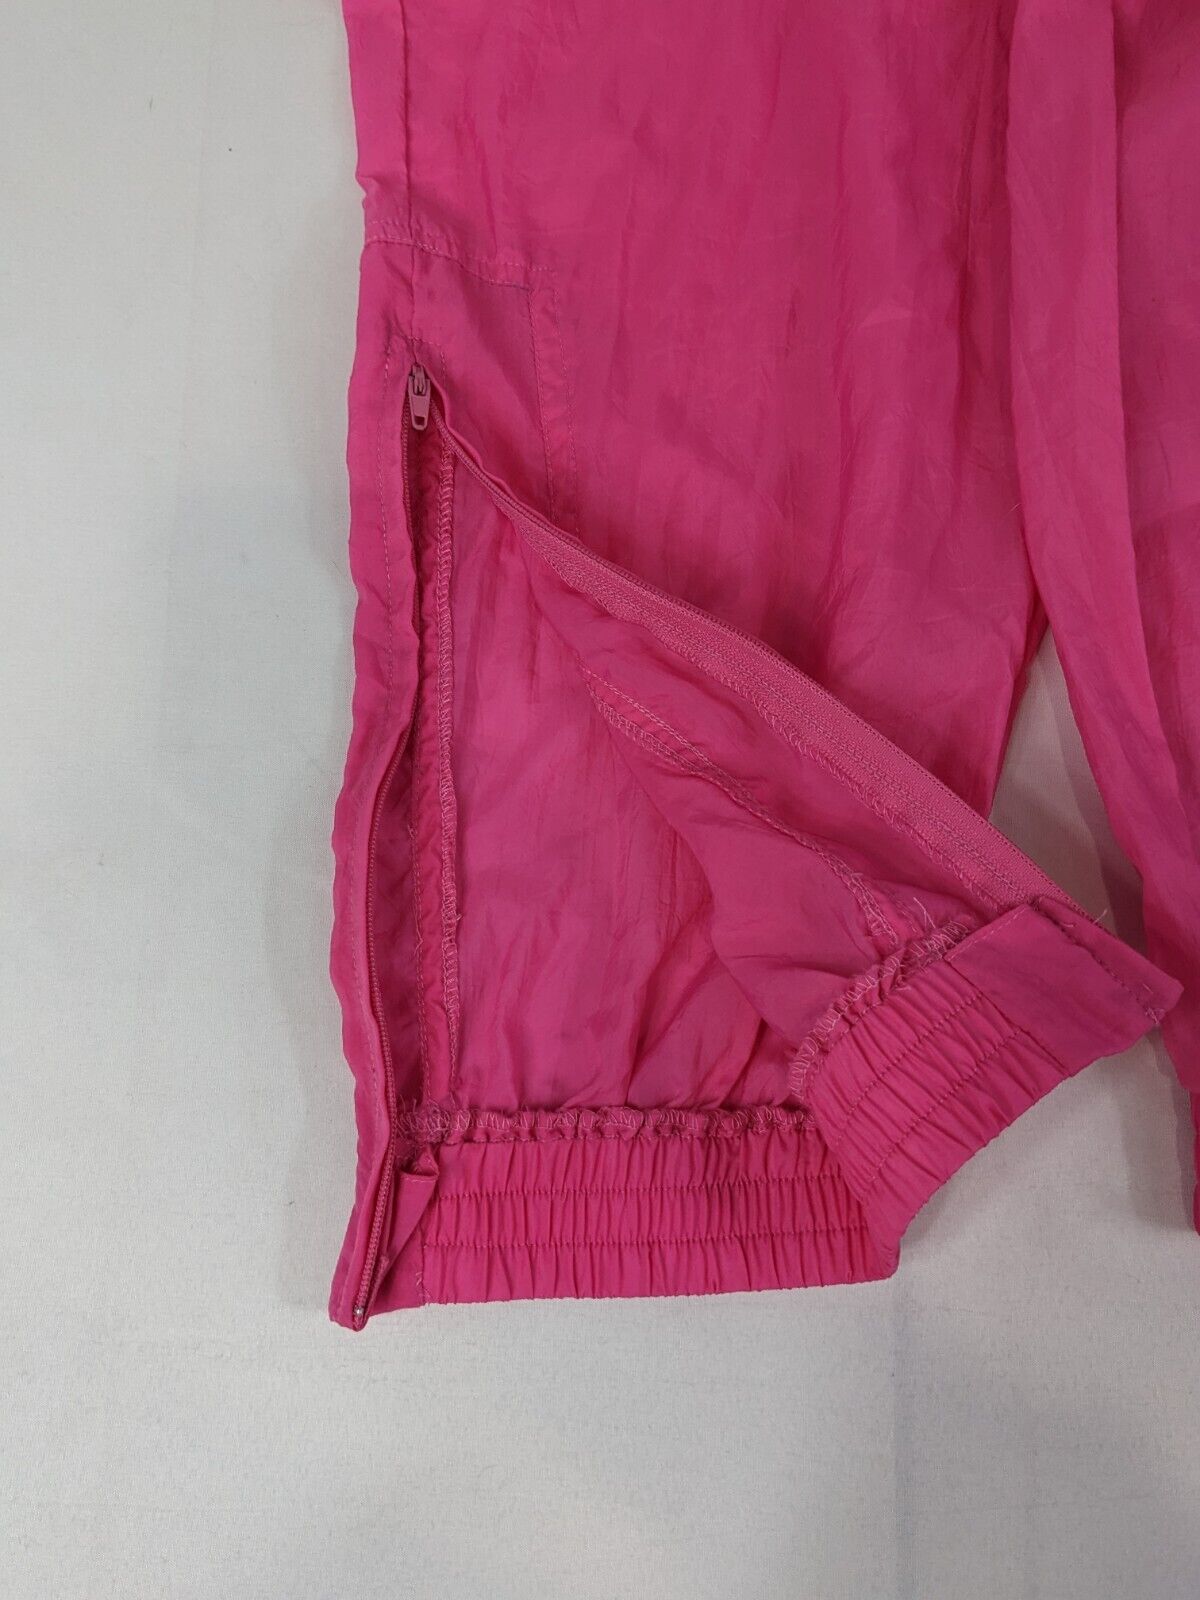 Puma Women's Activewear Jogger Pants & Full-Zip Breathable Jacket Set Pink Sz M